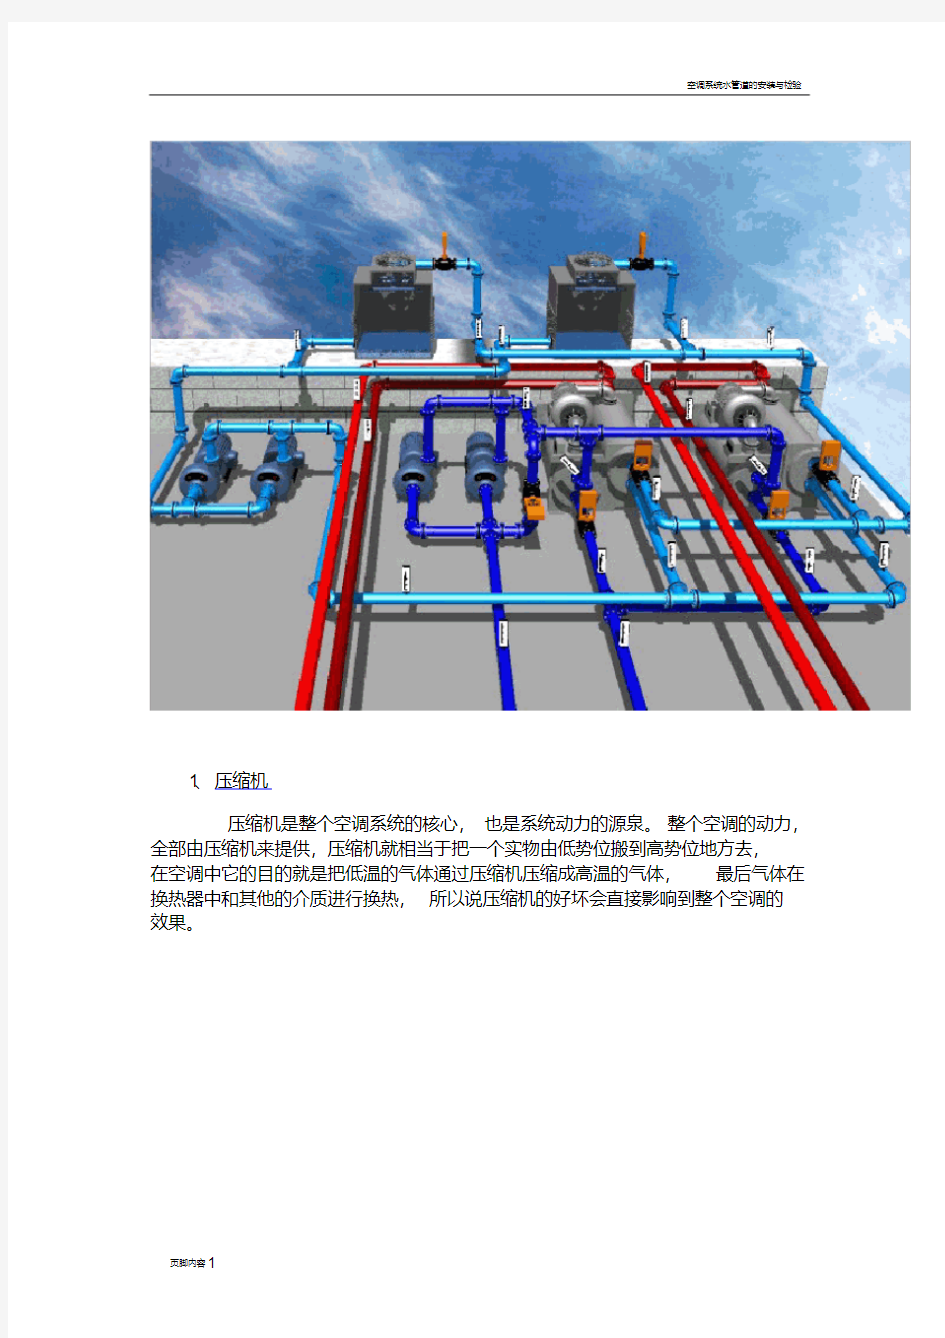 空调系统的重要部件介绍(带图)